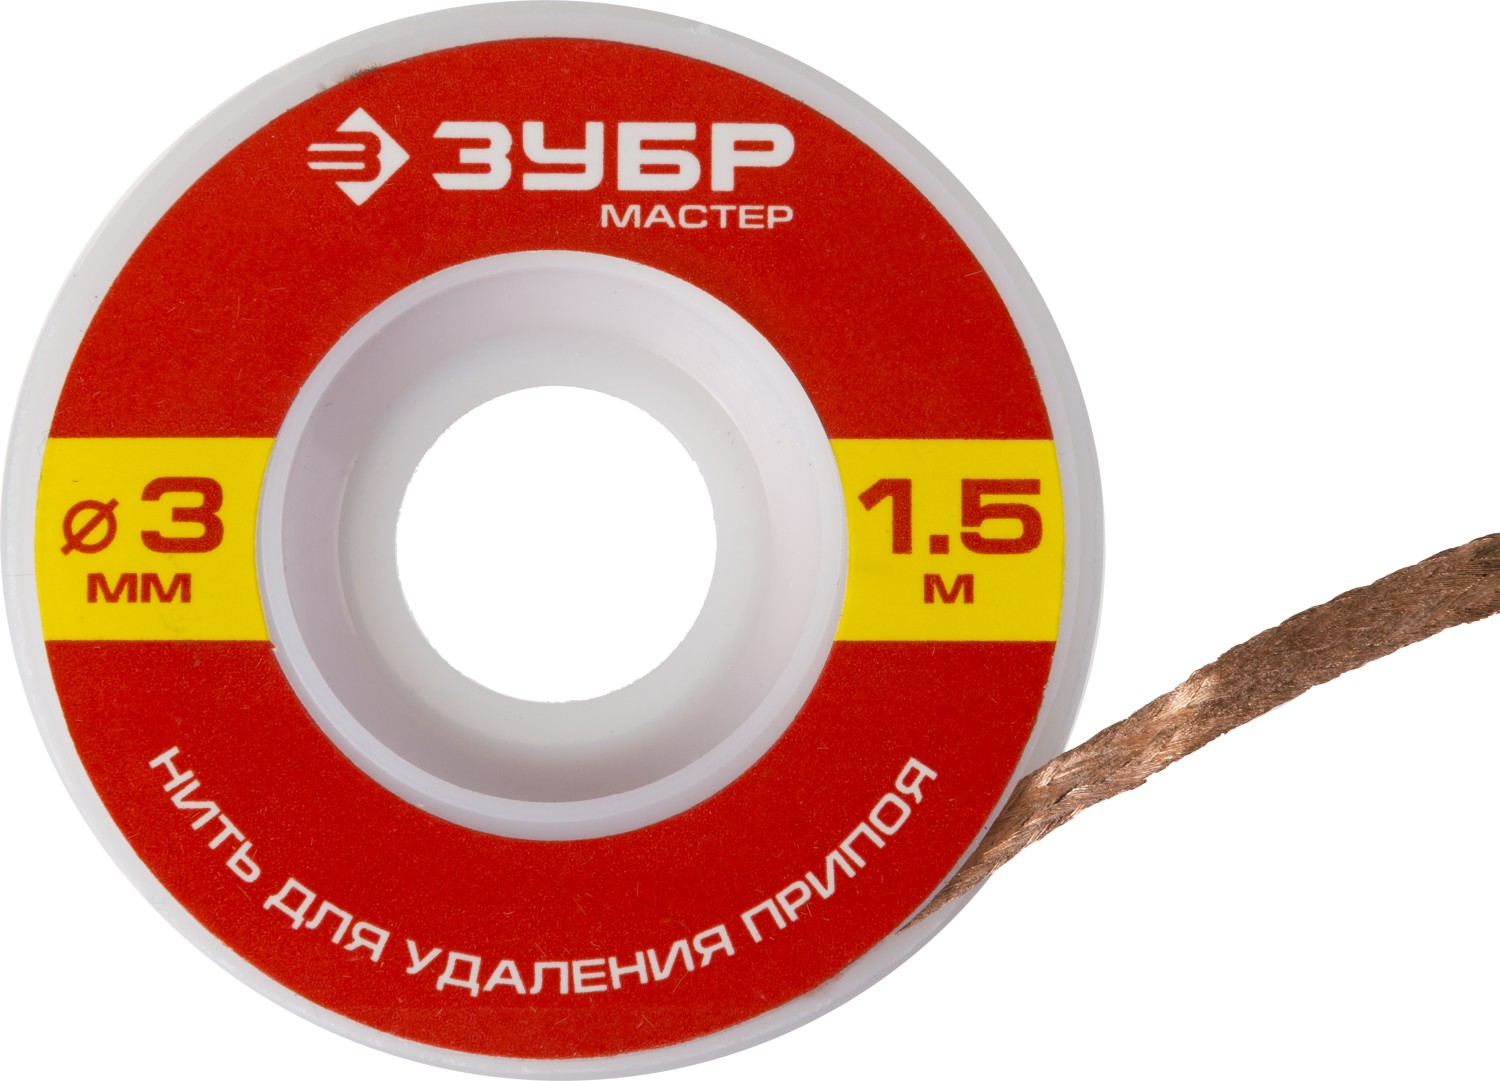 ЗУБР 3 мм, 1.5 м, нить для удаления излишков припоя (55469-3)